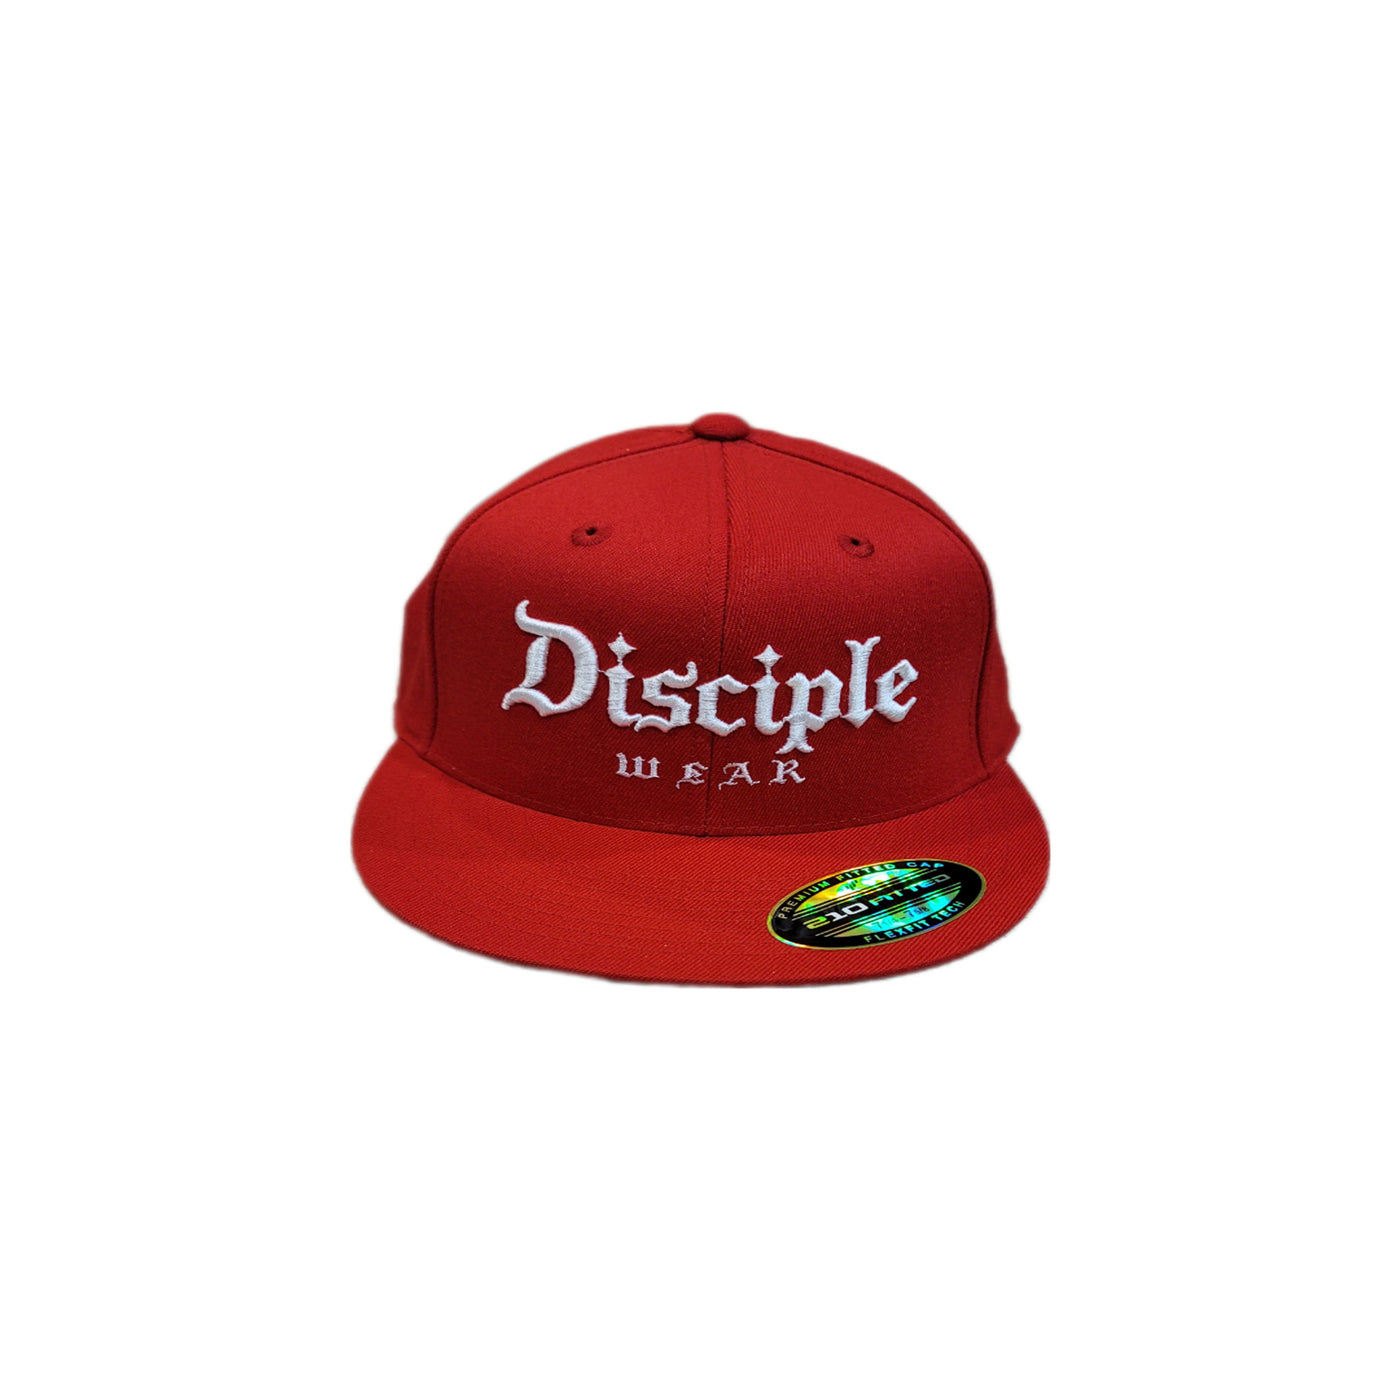 3D DISCIPLE HAT